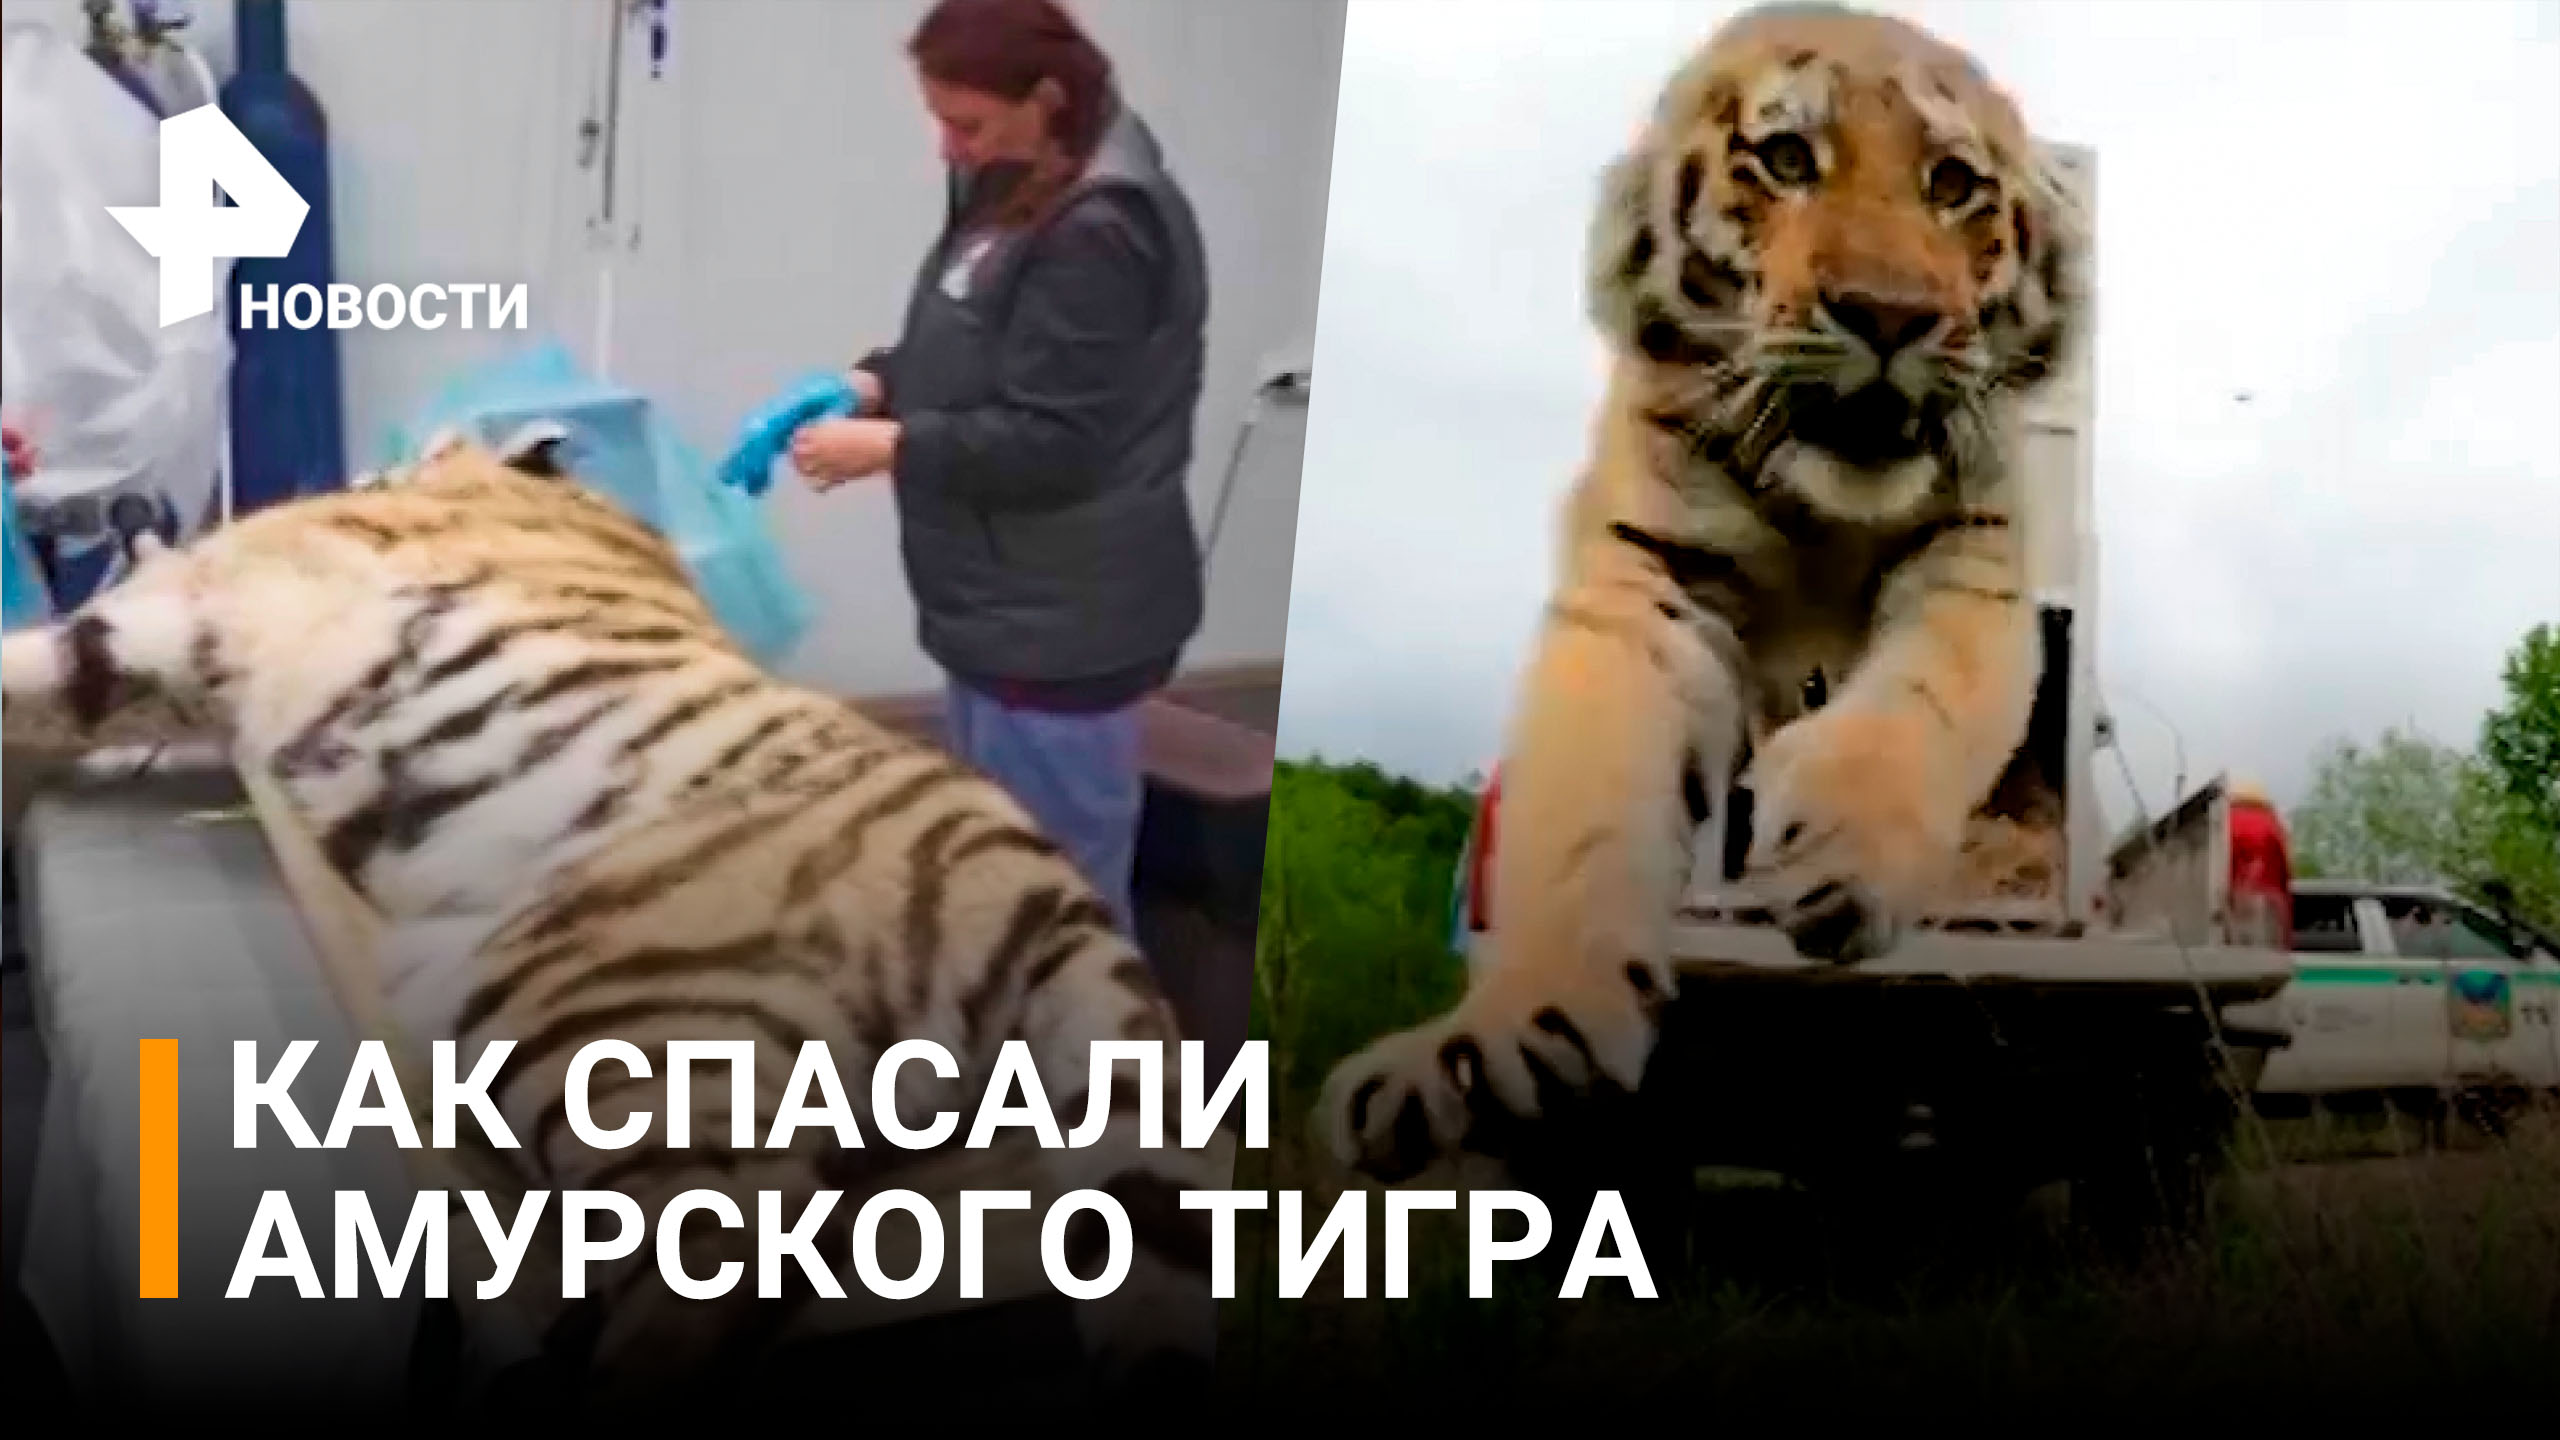 Спецоперация по спасению амурского тигра: угрожал деревням, а сам чуть не погиб / РЕН Новости